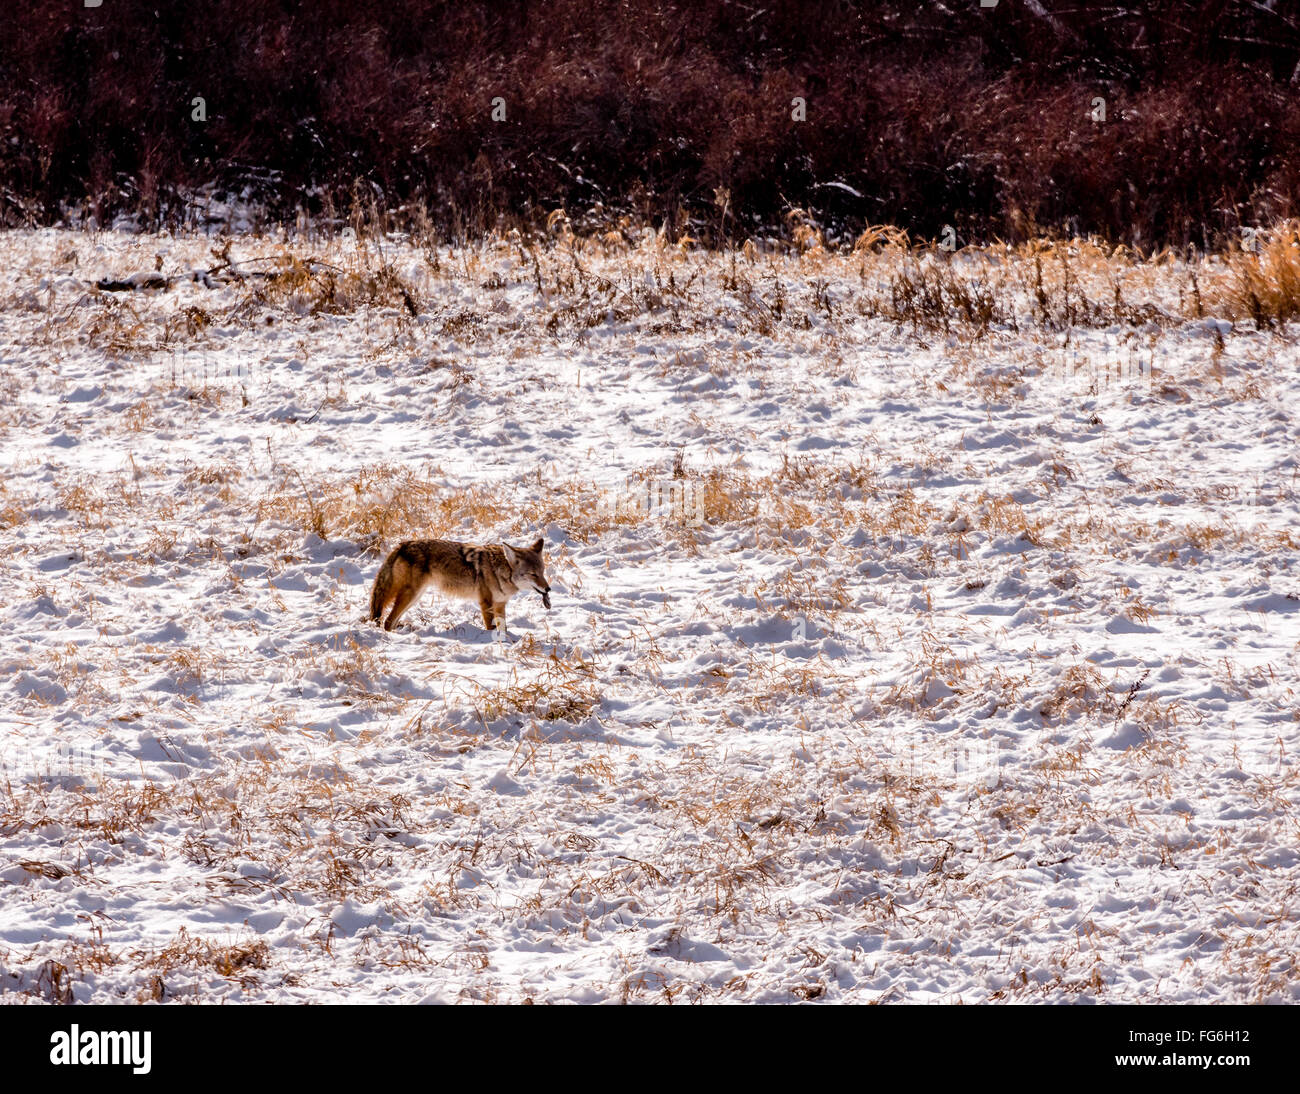 Le Coyote avec les proies, un campagnol, dans la neige Banque D'Images